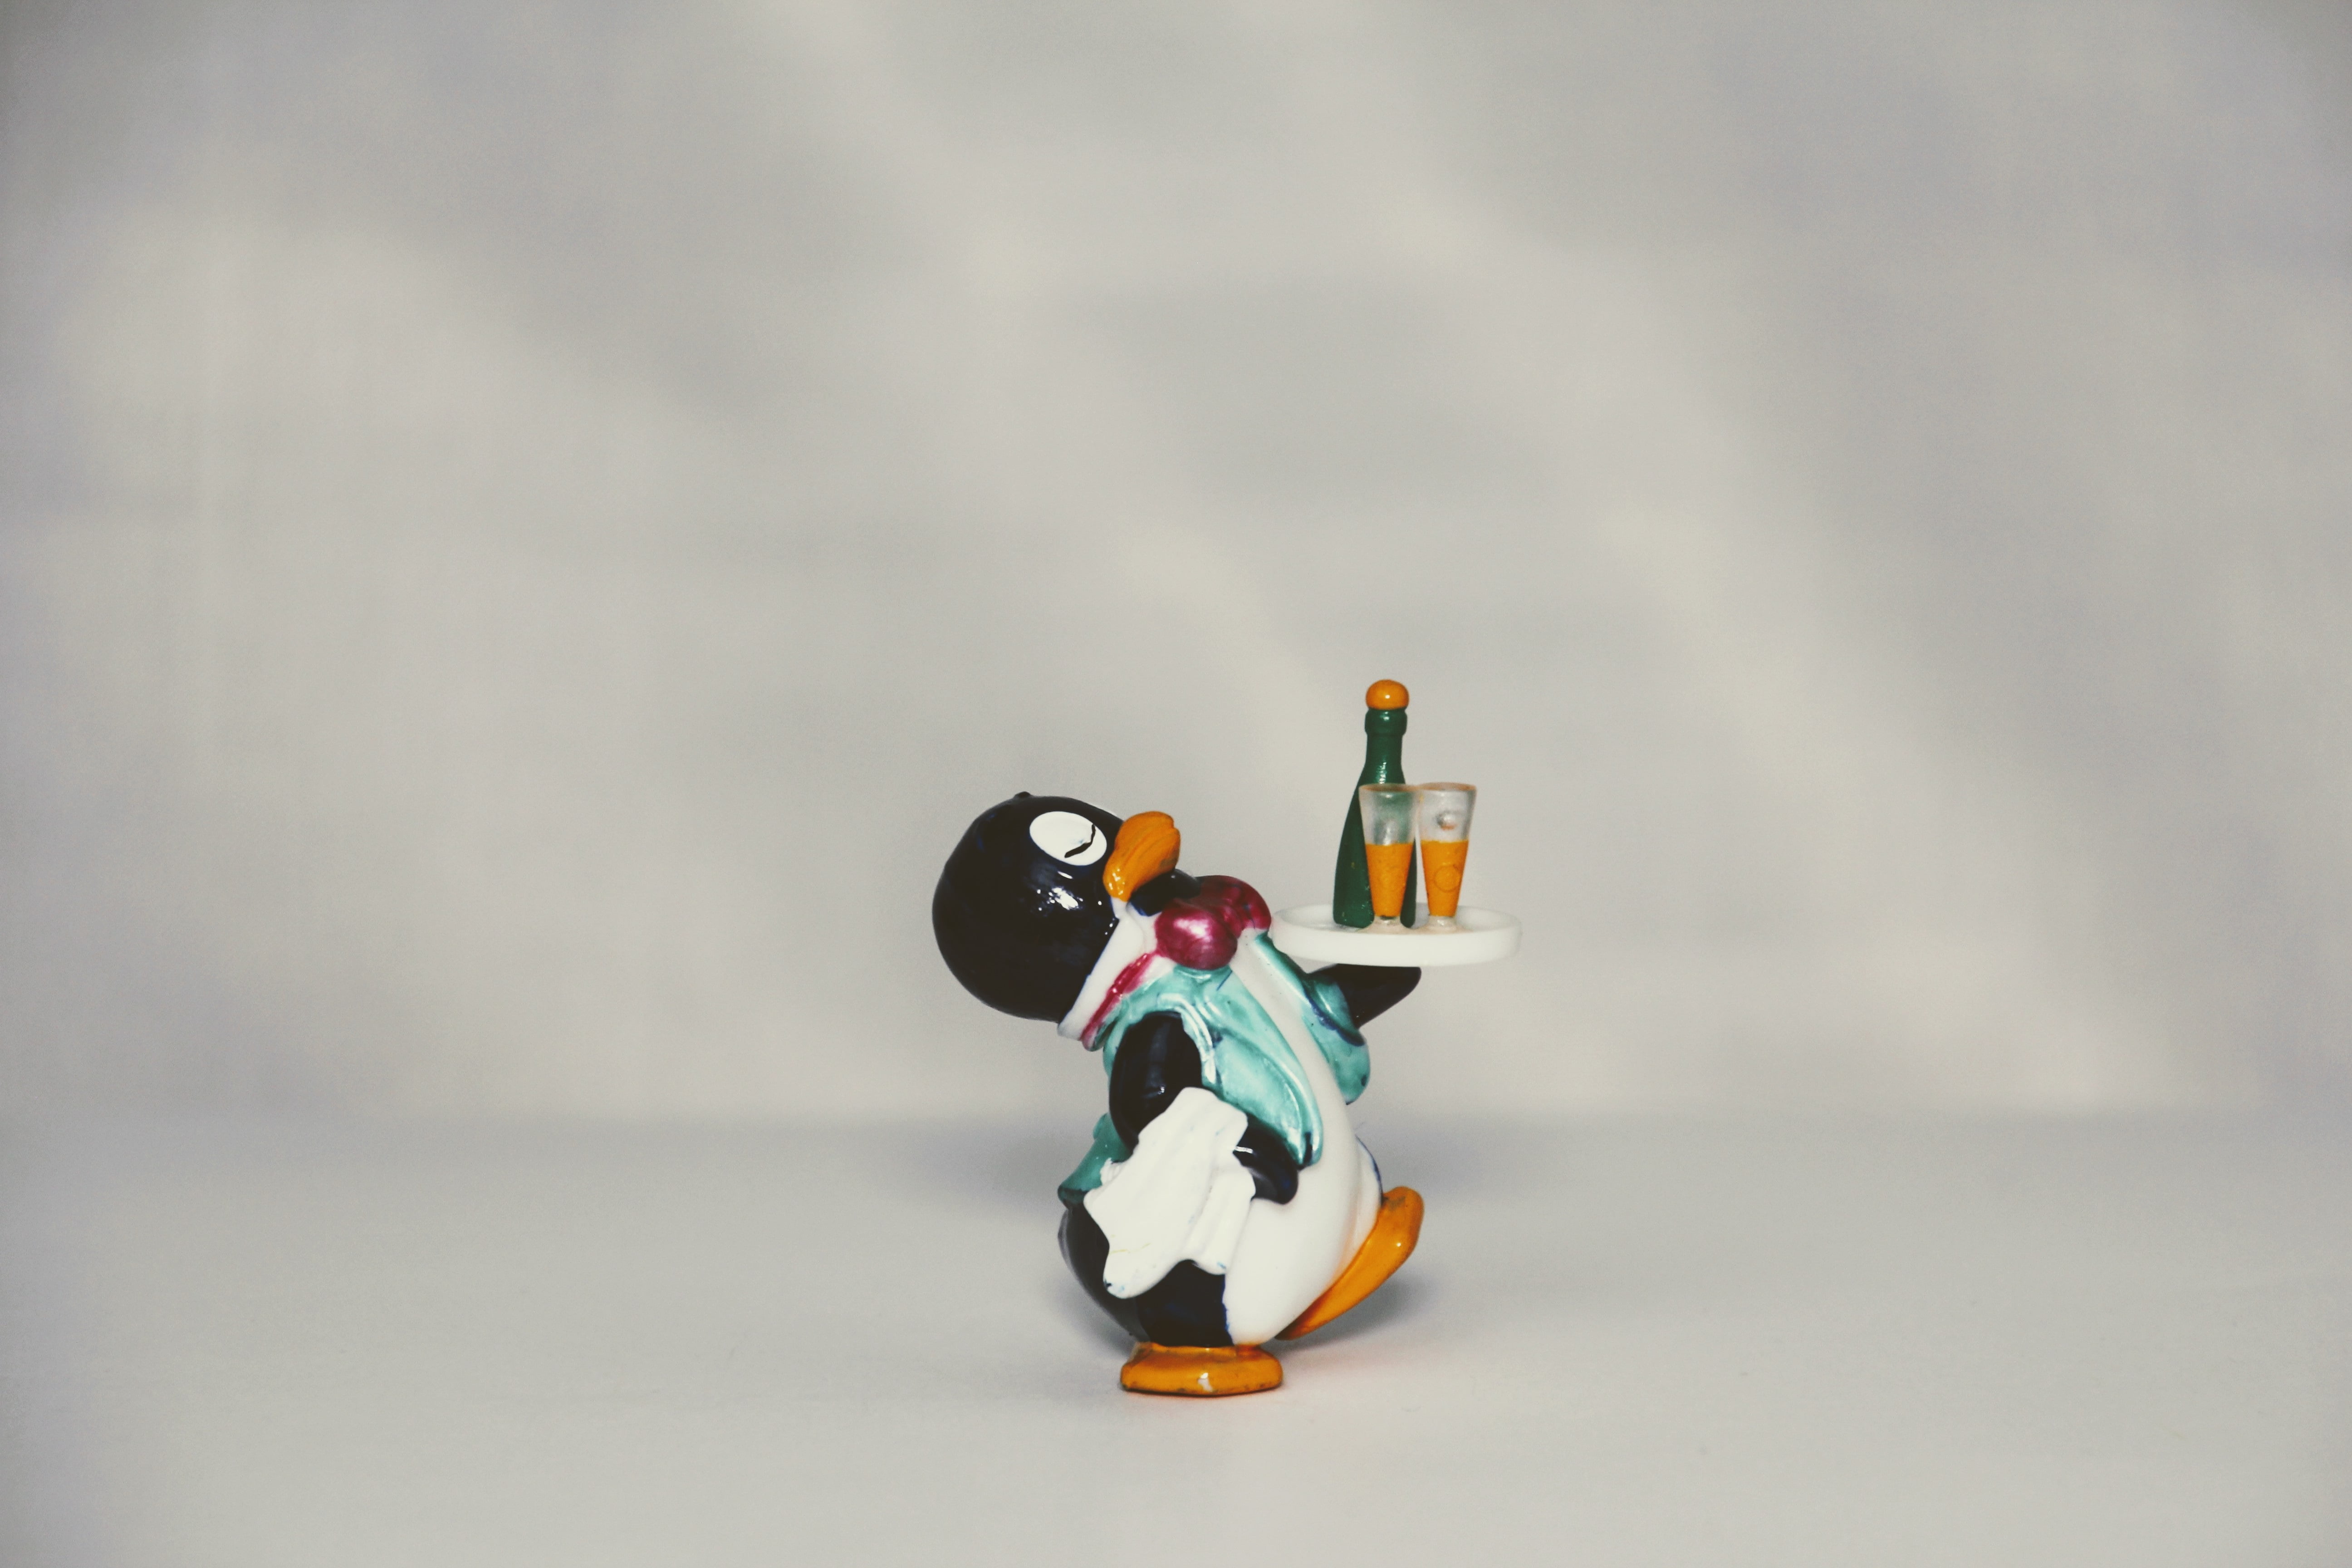 Игра битой бить пингвинов. Пингвин с подносом. Linux Пингвин. Пингвин сидит. Игра Пингвин официант.